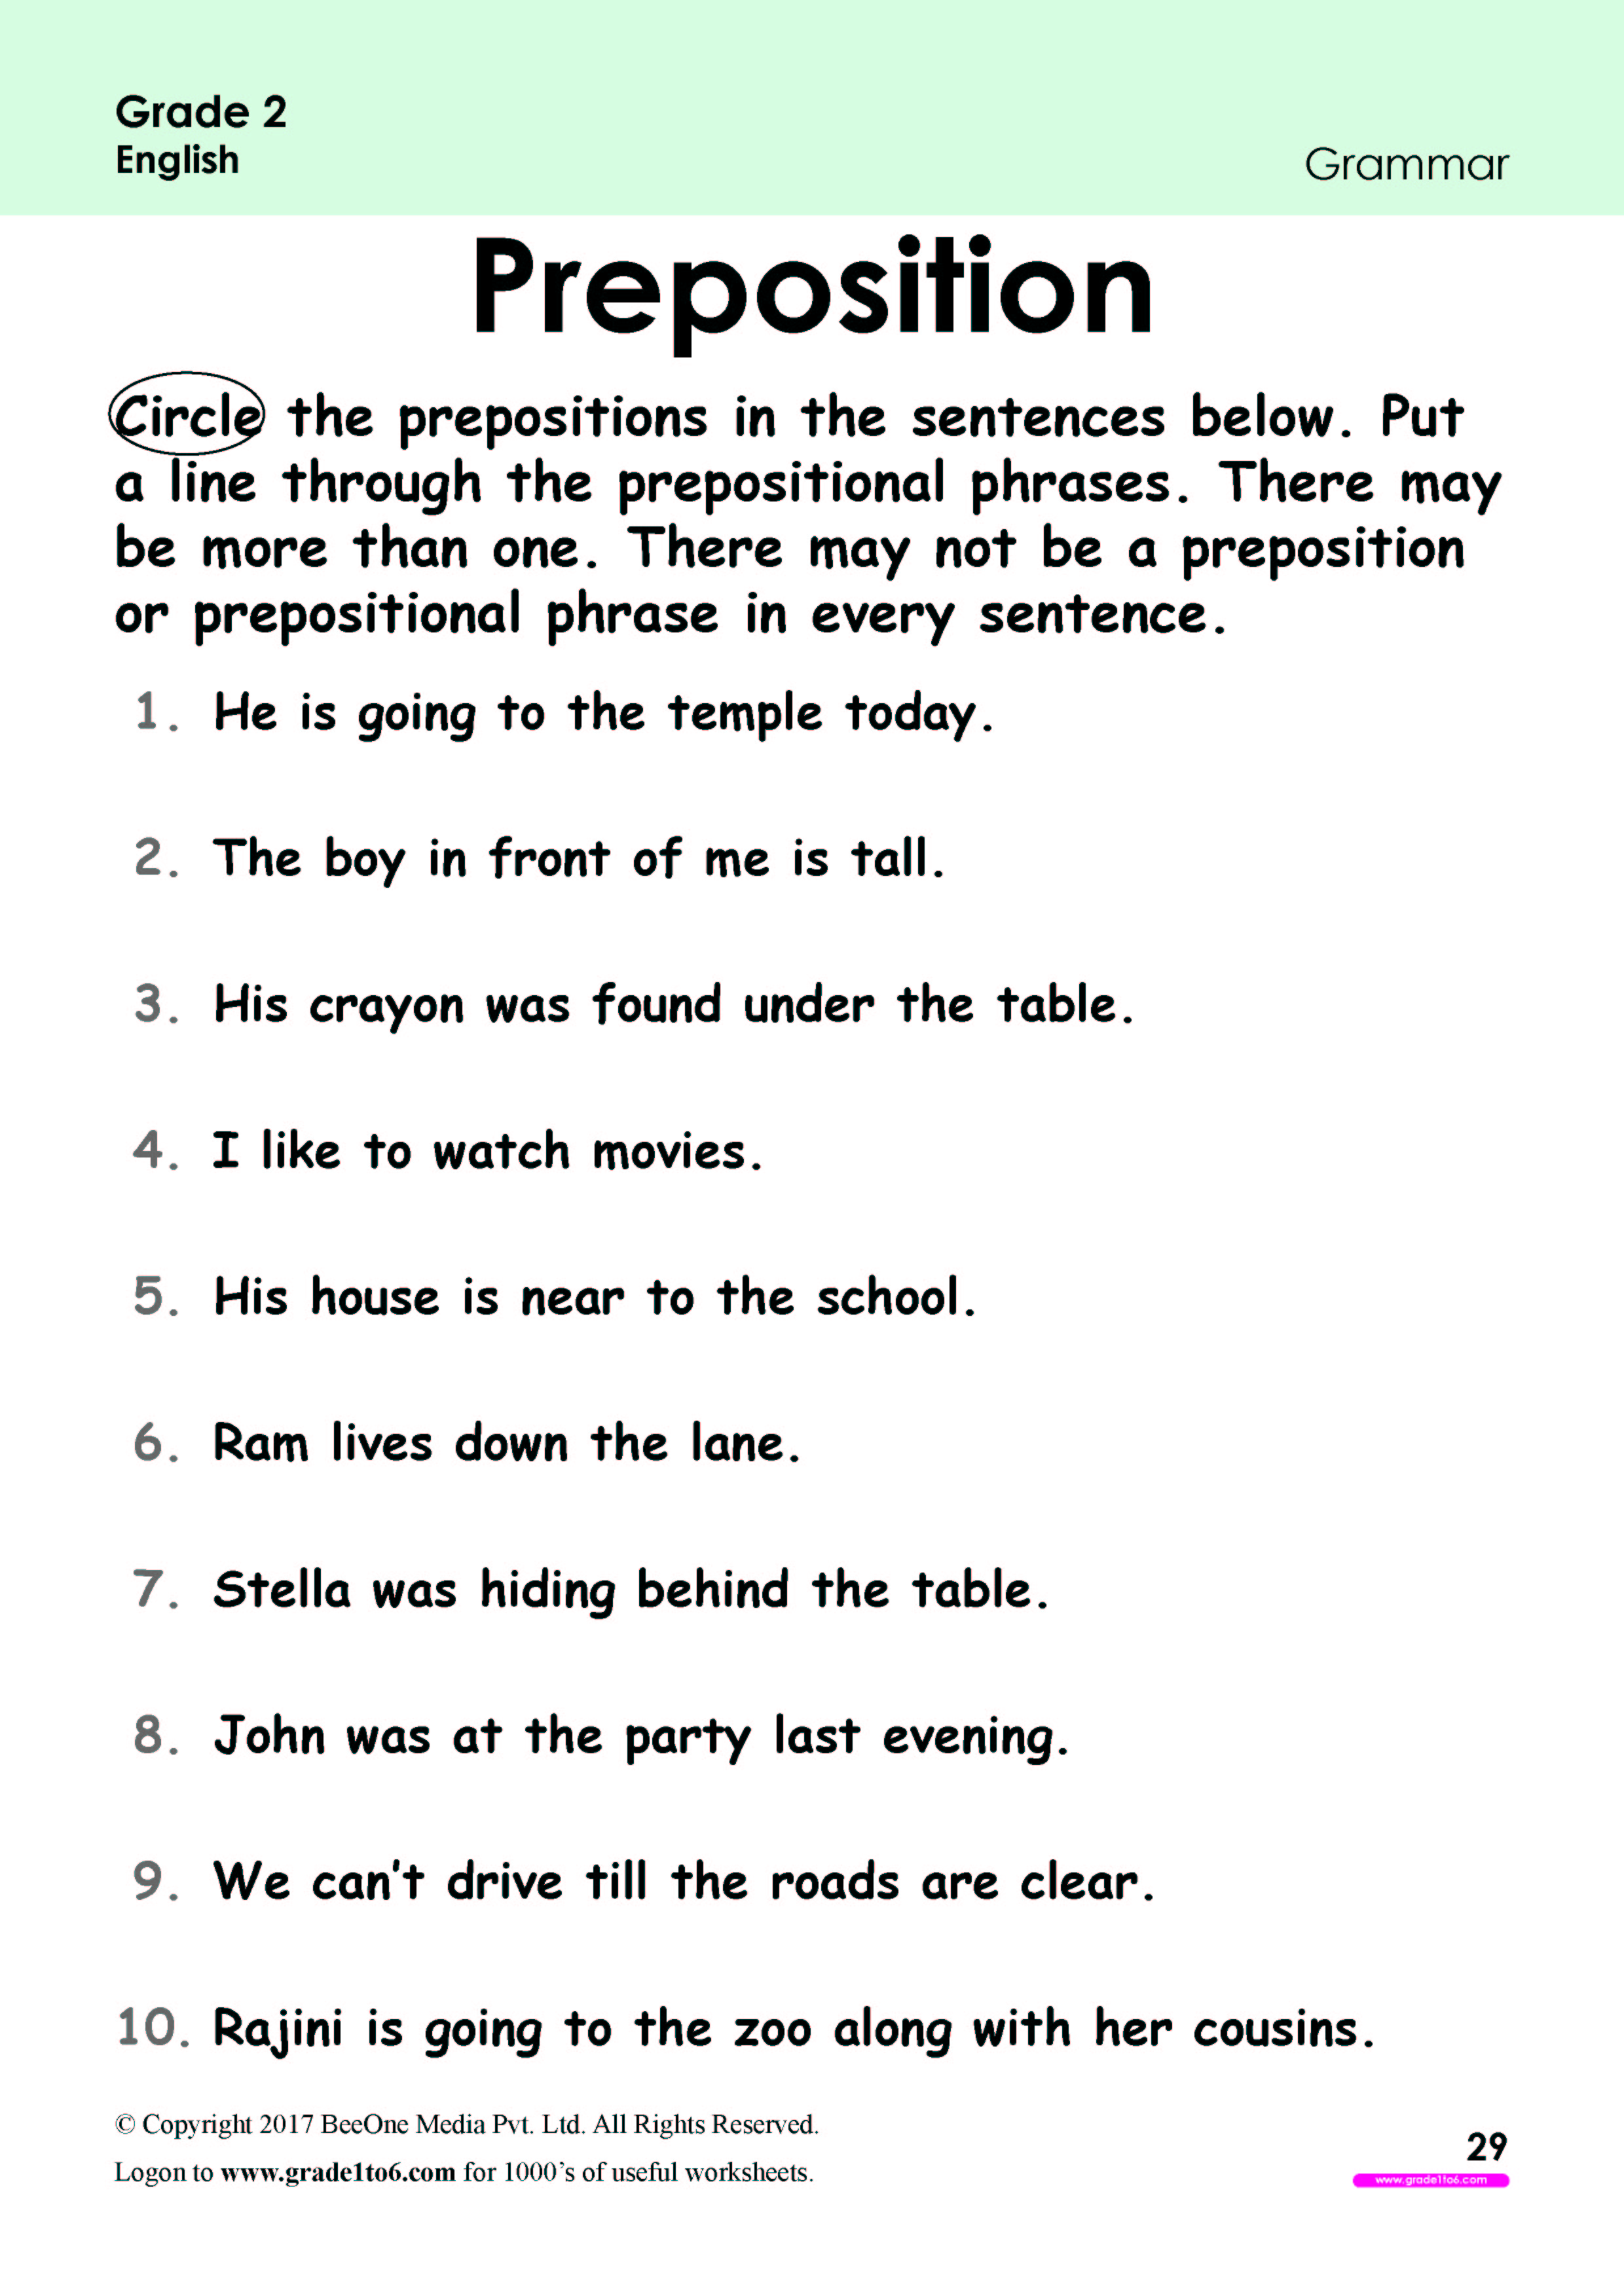 Preposition Worksheets For Grade 2 Preposition Worksh - vrogue.co